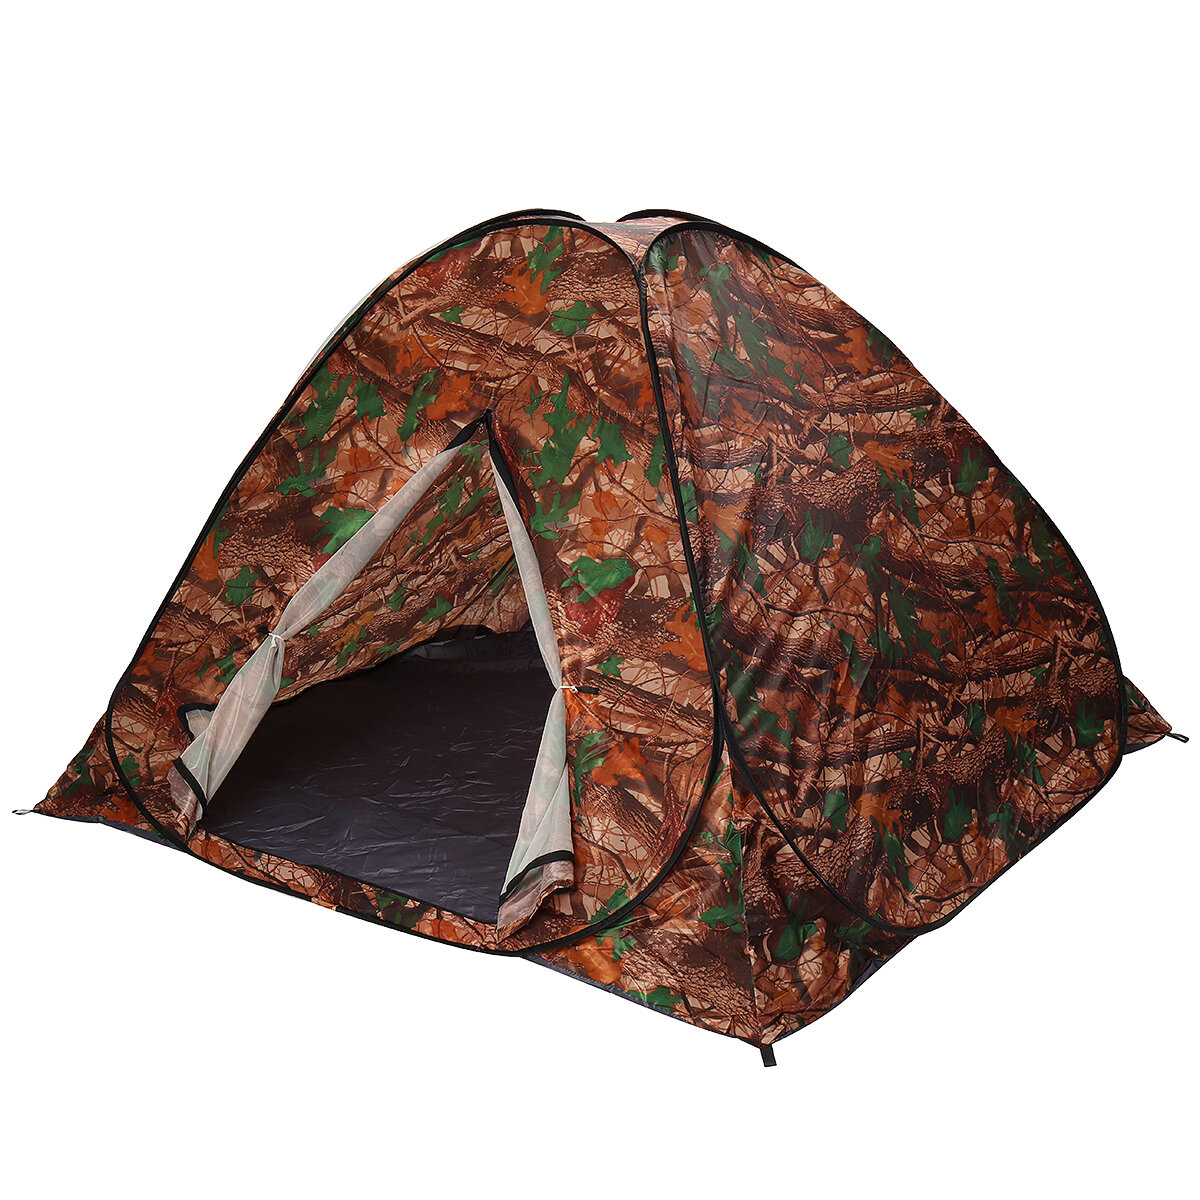 Tenda de acampamento automática para 3-4 pessoas Abertura rápida instantânea Anti-UV com revestimento prateado Tenda com toldo camuflagem folha para uso ao ar livre